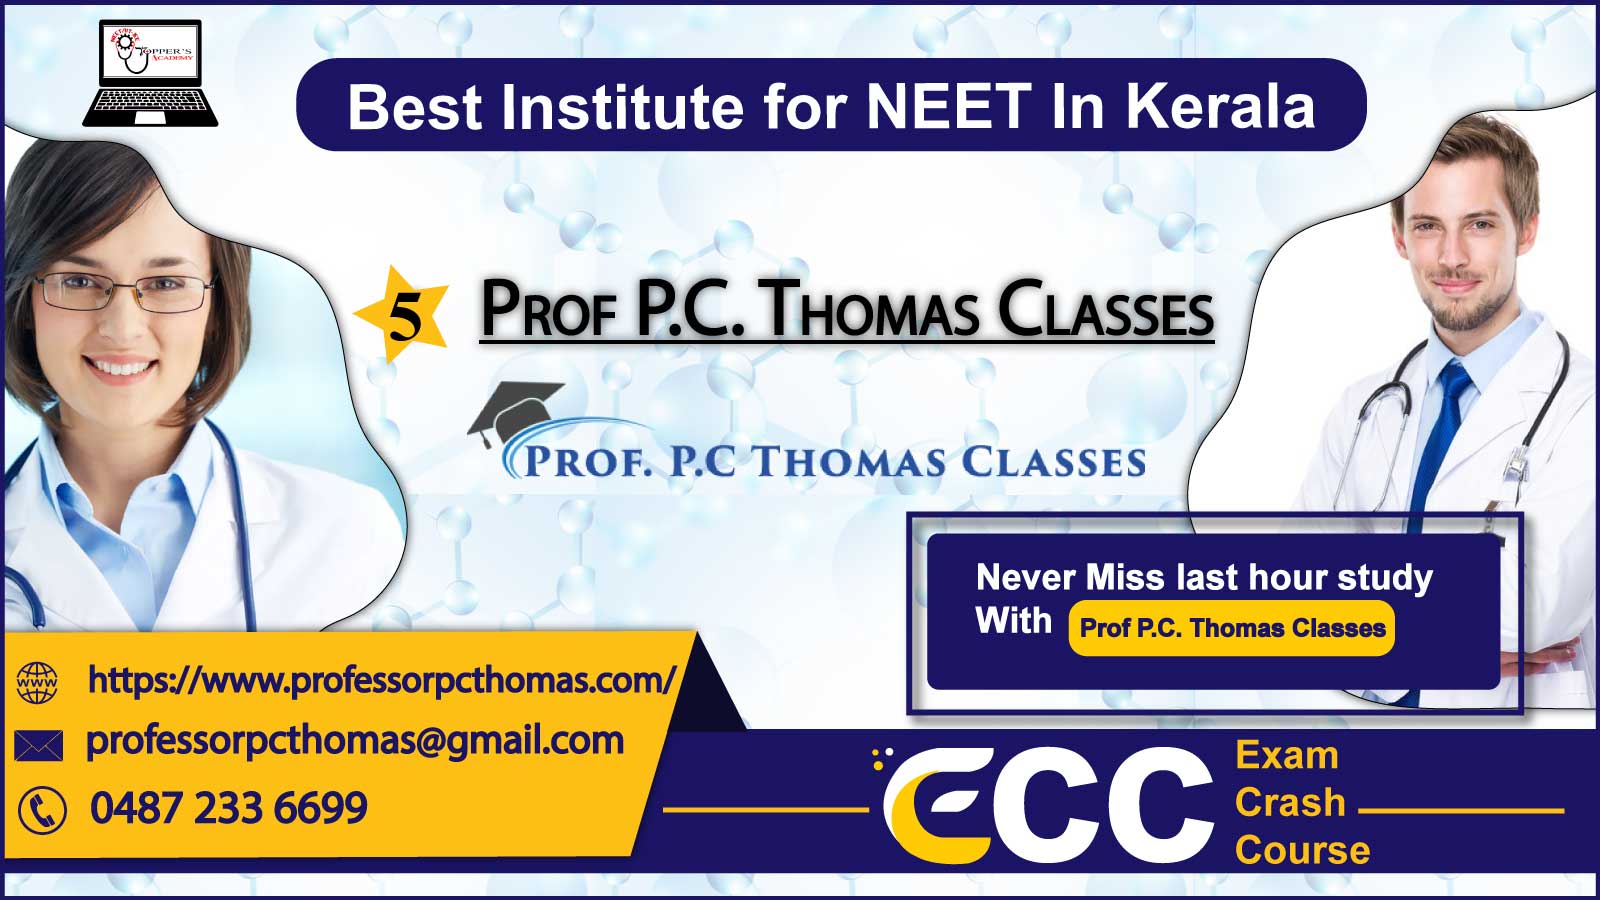 Prof P.C. Thomas NEET Classes In Kerala